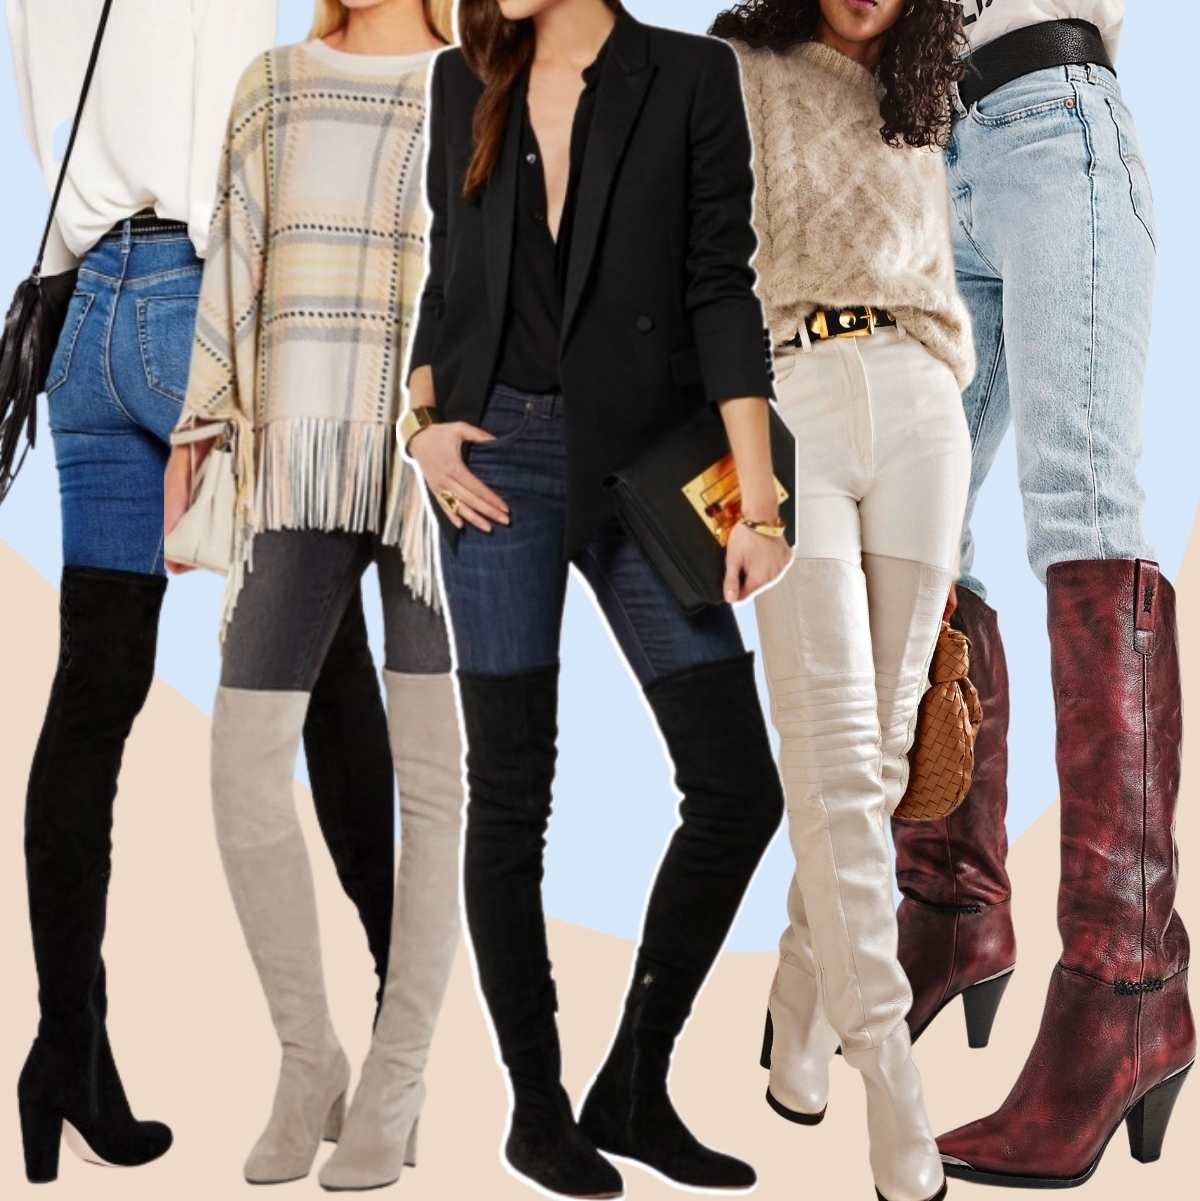 Hình ghép 5 người phụ nữ mặc trang phục giày cao cổ quá gối với quần jeans.